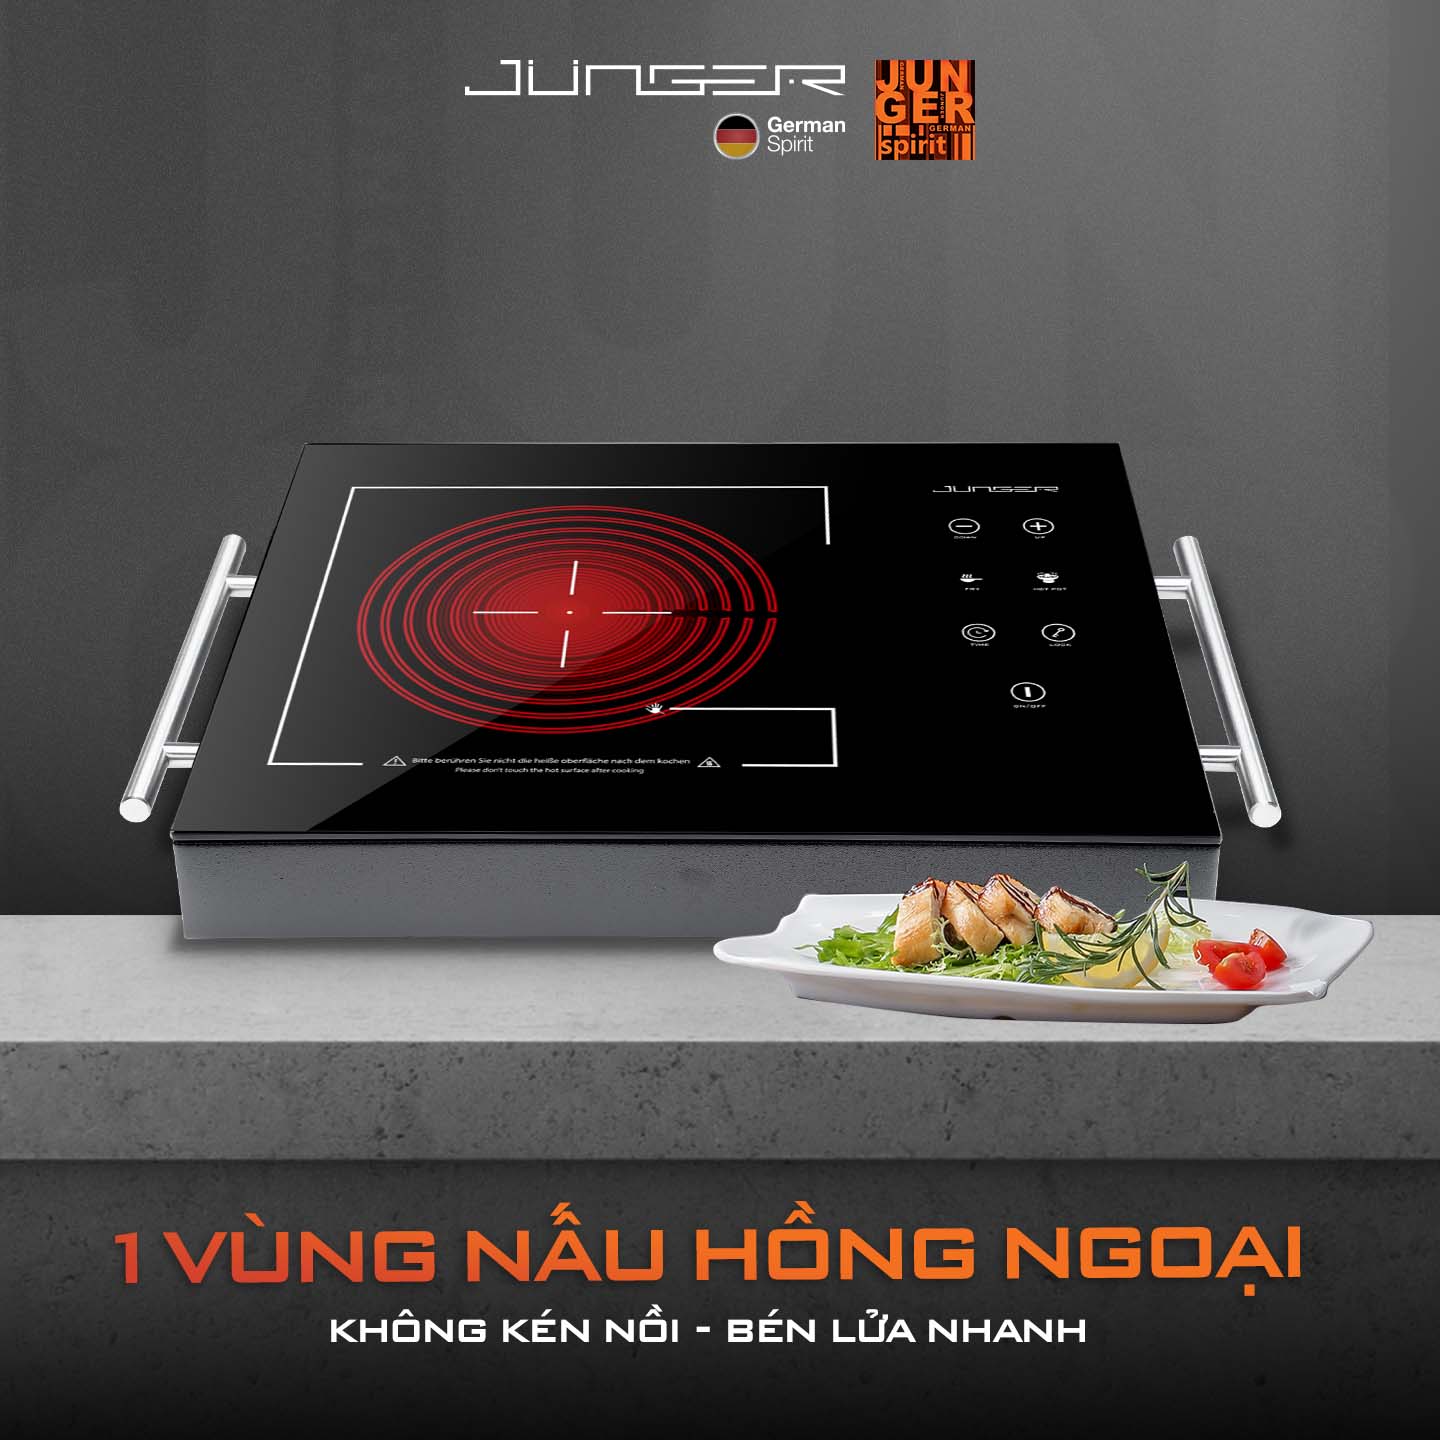 Bếp hồng ngoại đơn Junger MT-21 sở hữu thiết kế hiện đại chuẩn đẳng cấp Đức nâng tầm không gian sống.